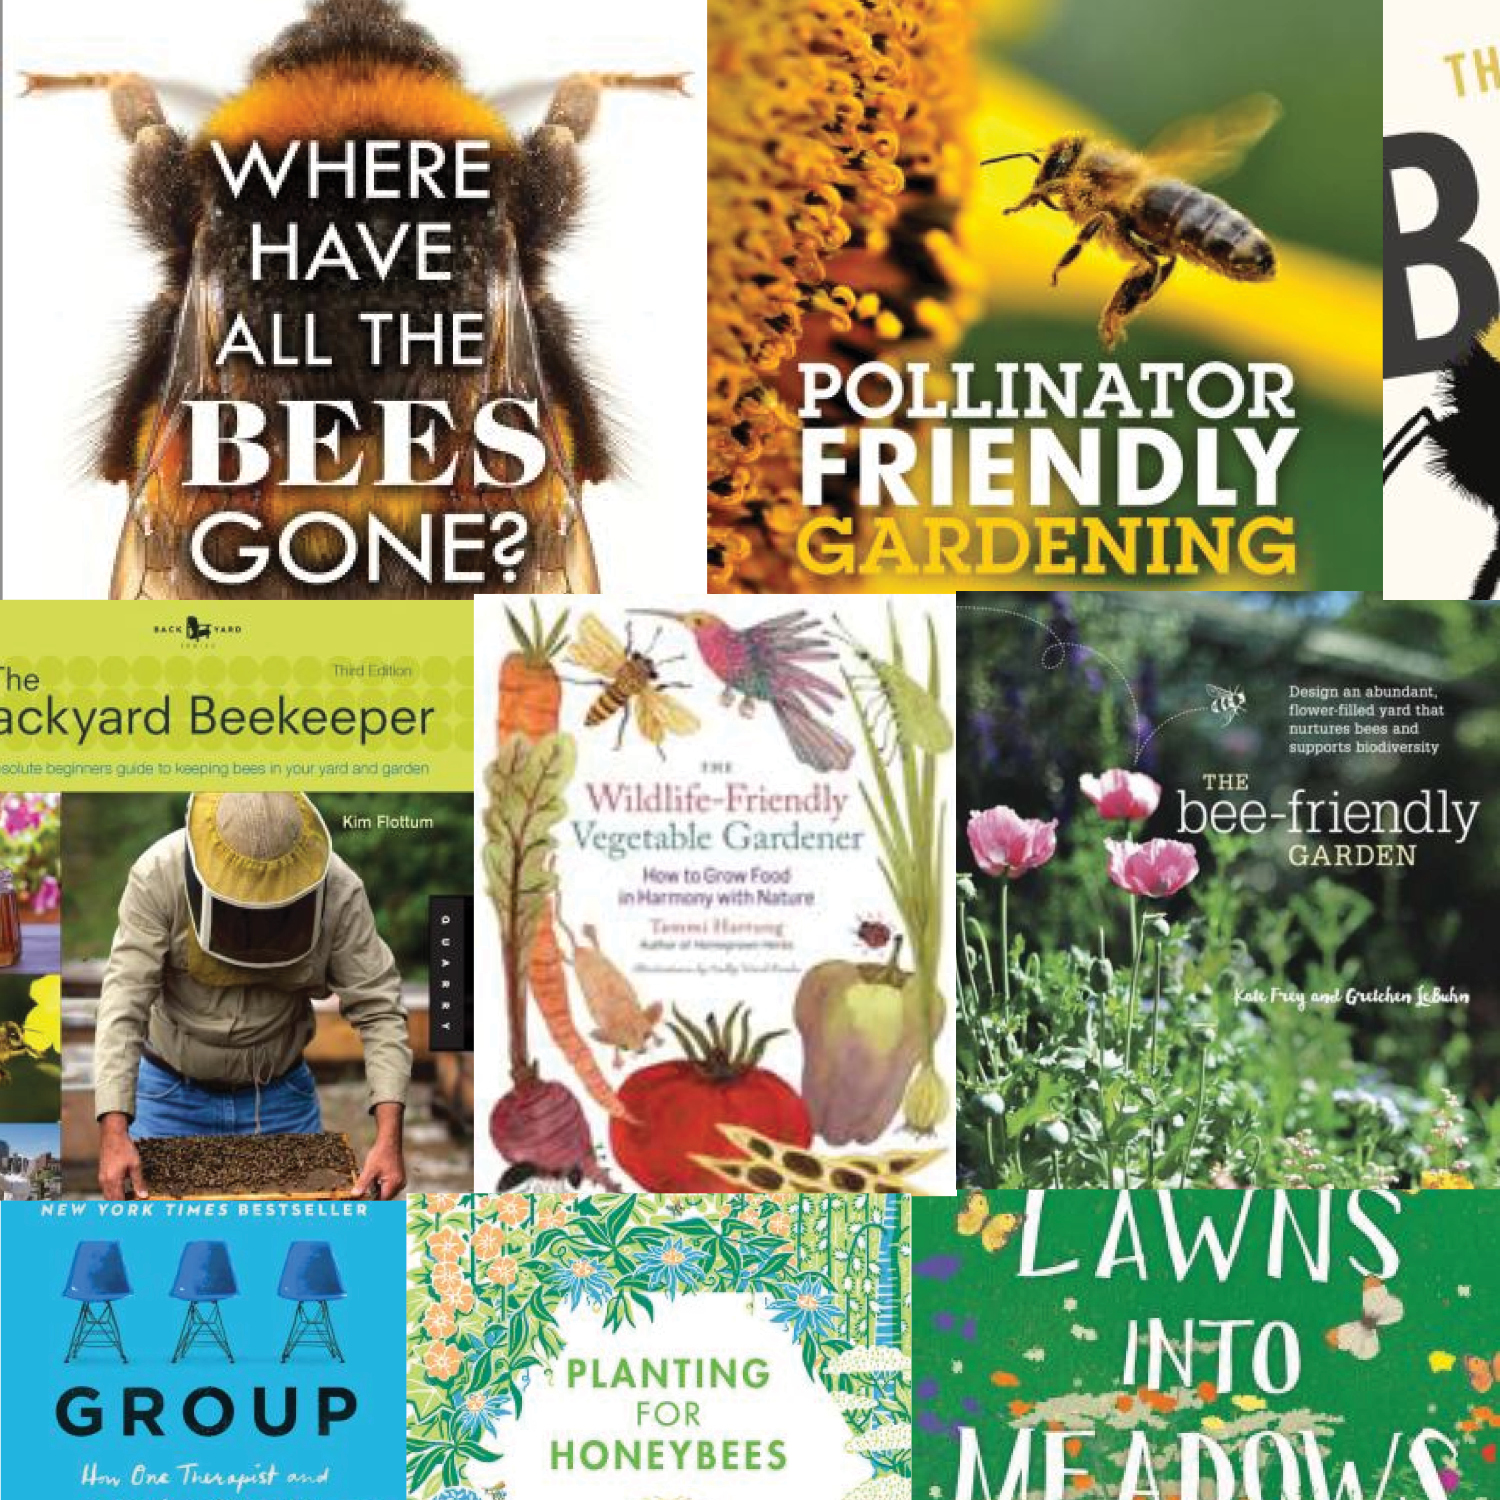 June 21-27 is Pollinator Week